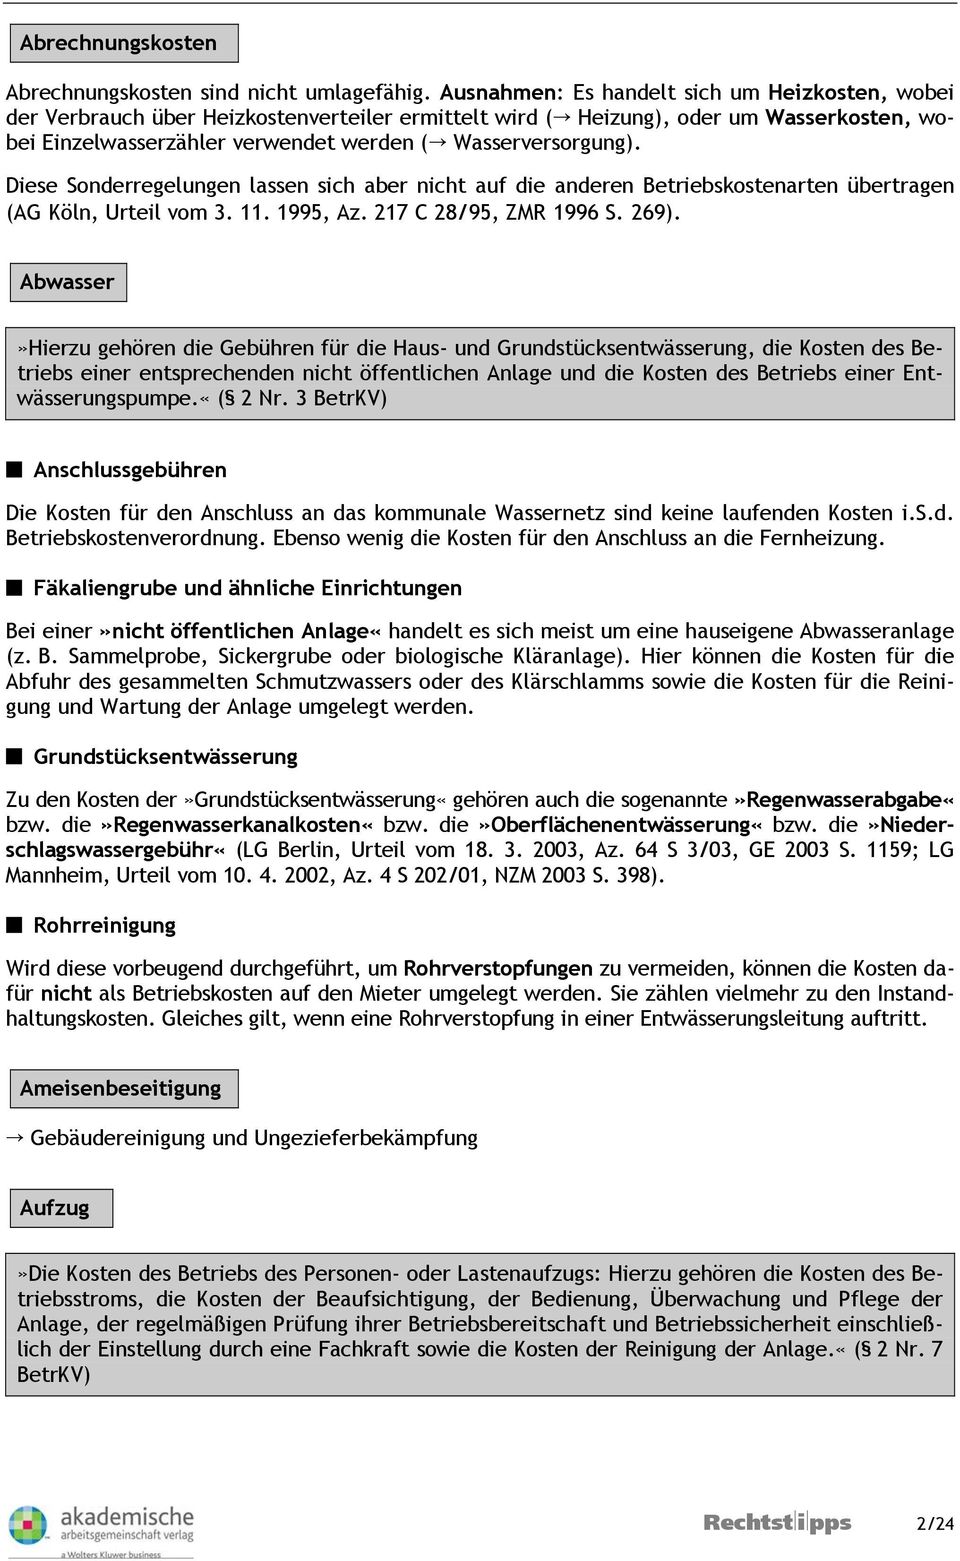 Diese Sonderregelungen lassen sich aber nicht auf die anderen Betriebskostenarten übertragen (AG Köln, Urteil vom 3. 11. 1995, Az. 217 C 28/95, ZMR 1996 S. 269).